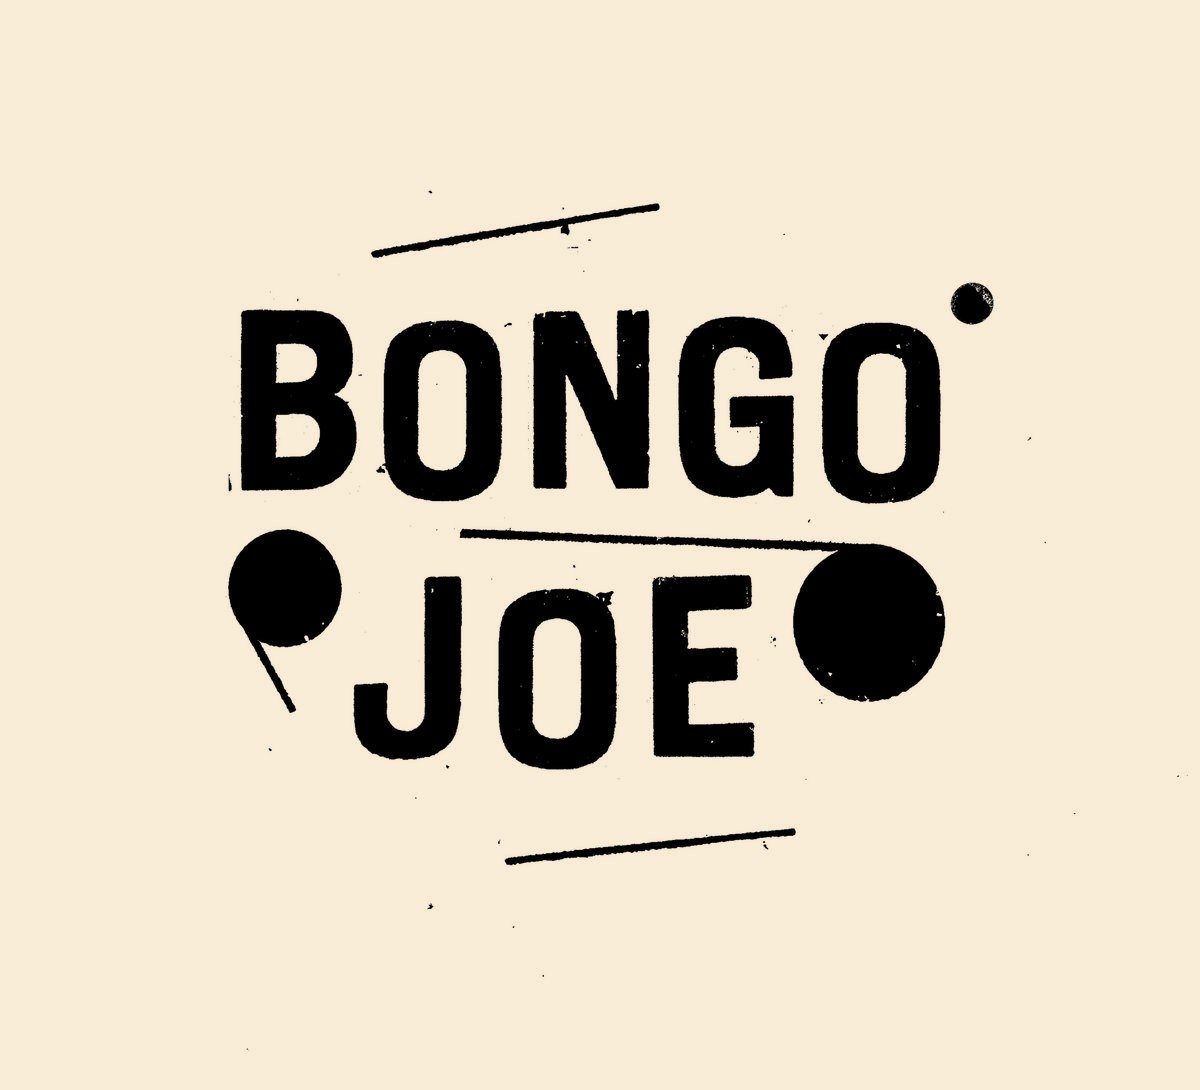 Bongo Joe